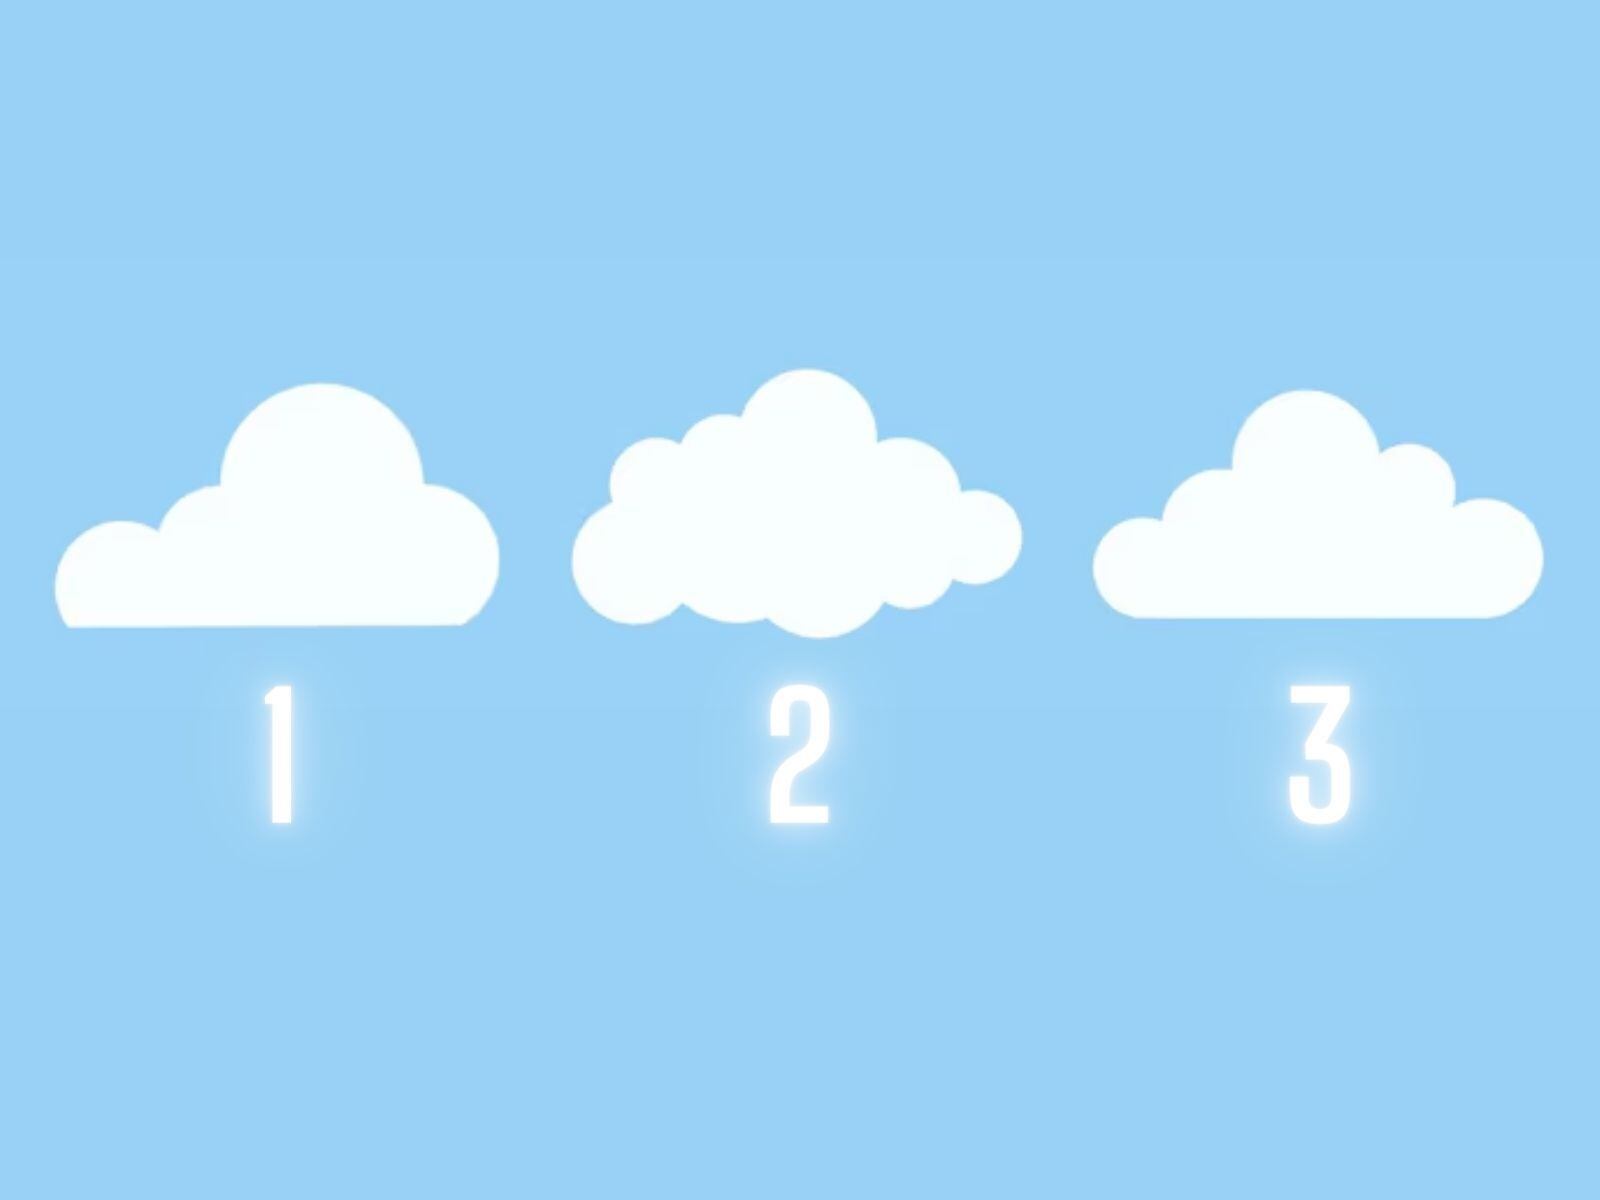 TEST VISUAL | Analiza. Cada nube contará con una importante información. (Foto: Composición Freepik / Depor)